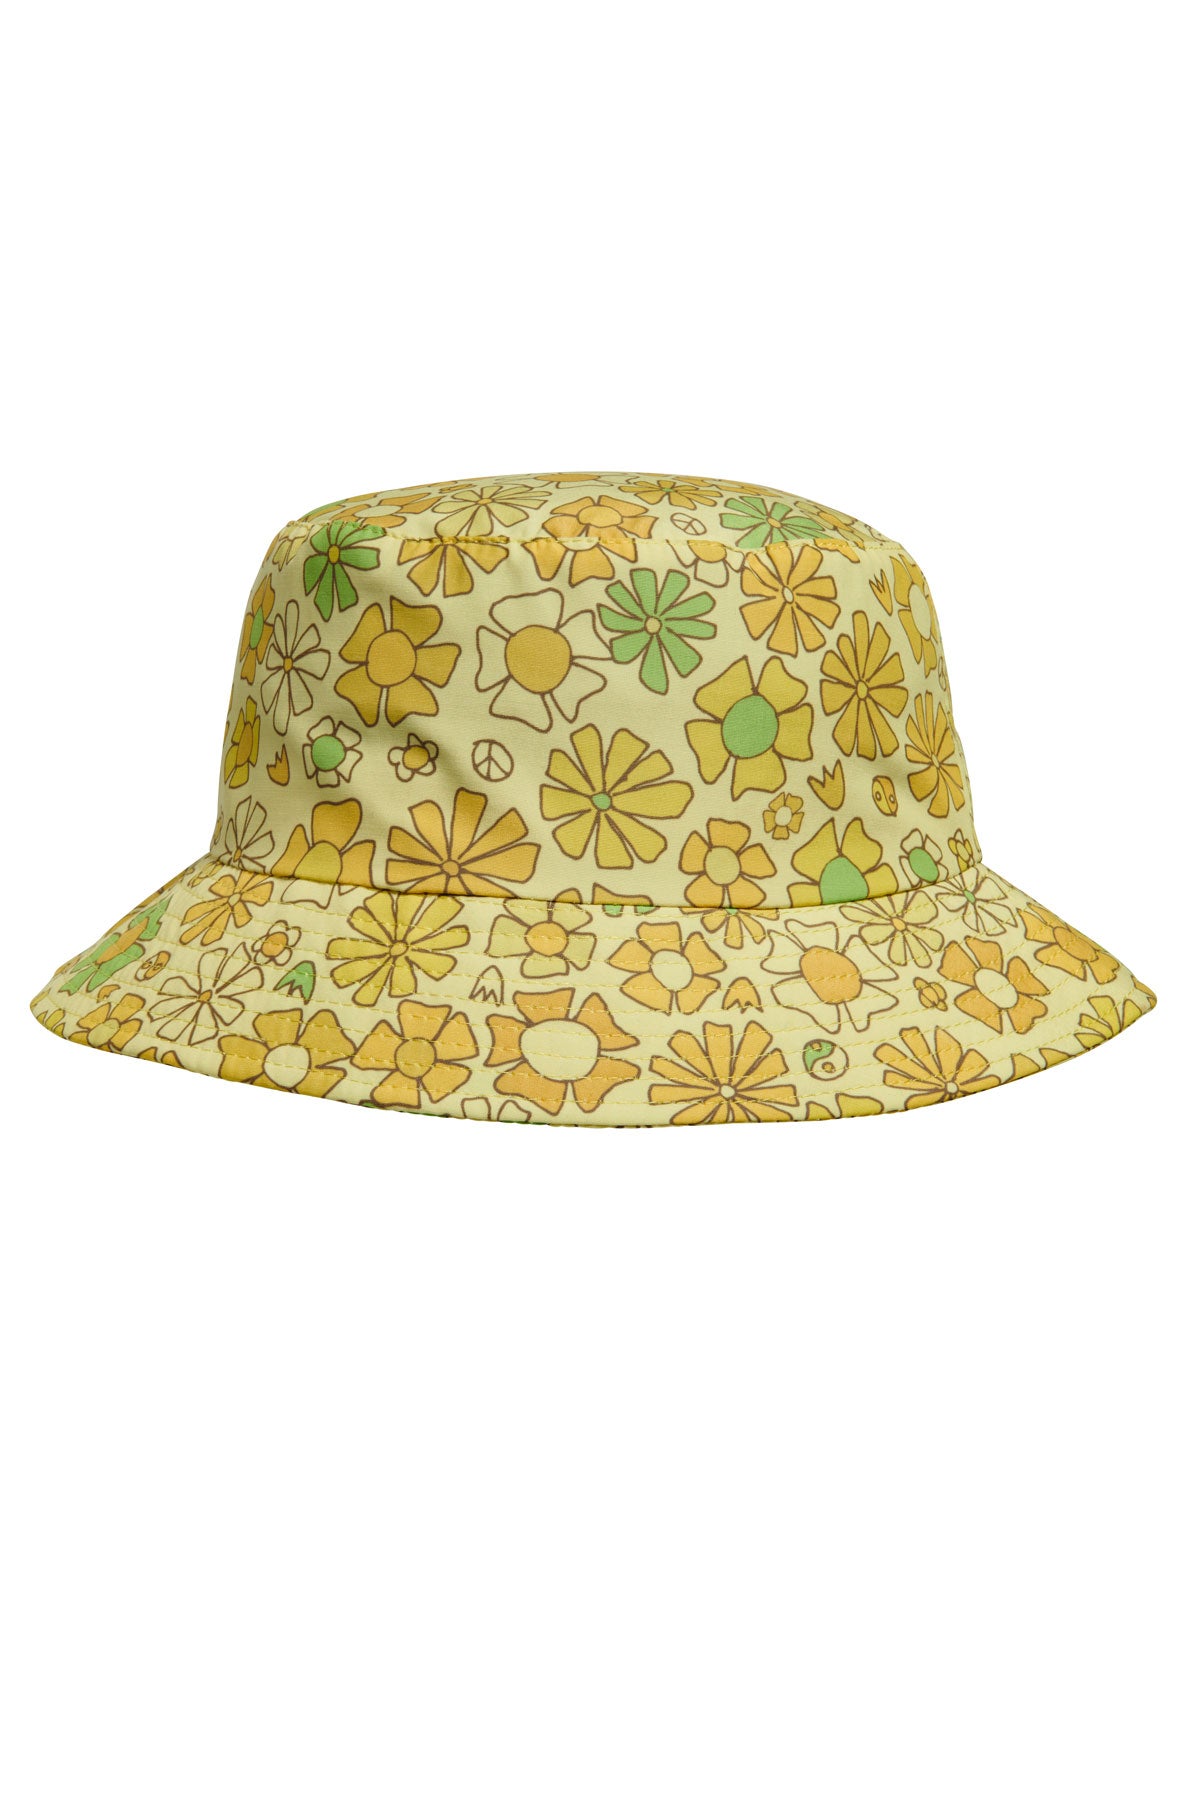 http://seaestasurf.com/cdn/shop/products/seaesta_surf-surfy_birdy_retro_floral_bucket_hat.jpg?v=1672769204